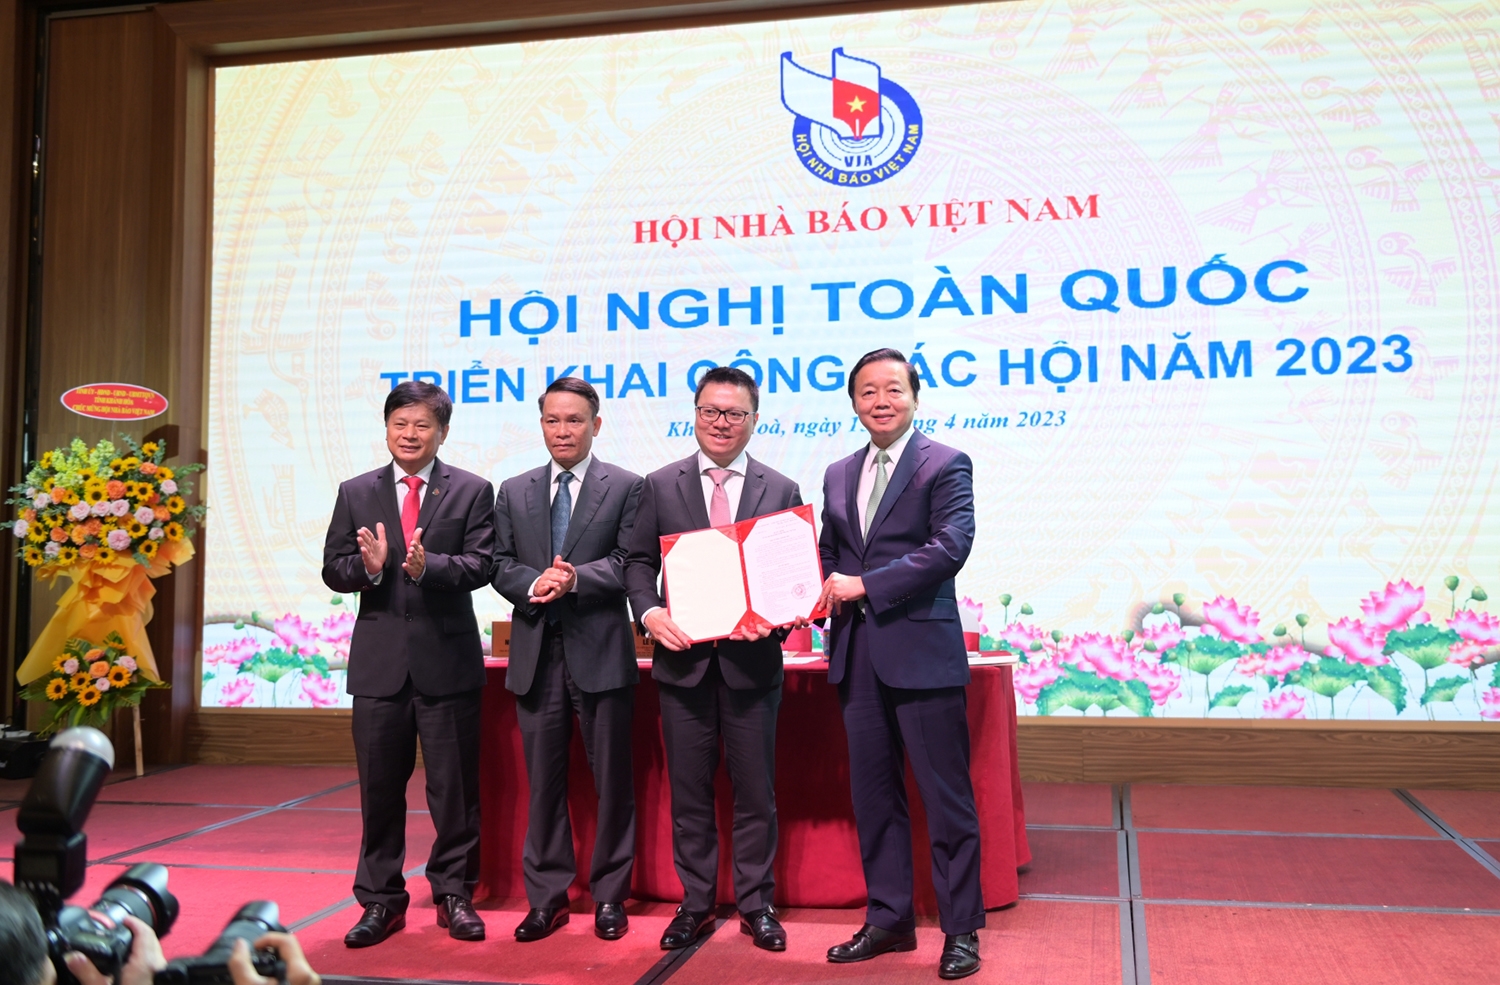 Phó Thủ tướng Chính phủ Trần Hồng Hà trao Quyết định phê duyệt Điều lệ Hội Nhà báo Việt Nam cho lãnh đạo Hội Nhà báo Việt Nam